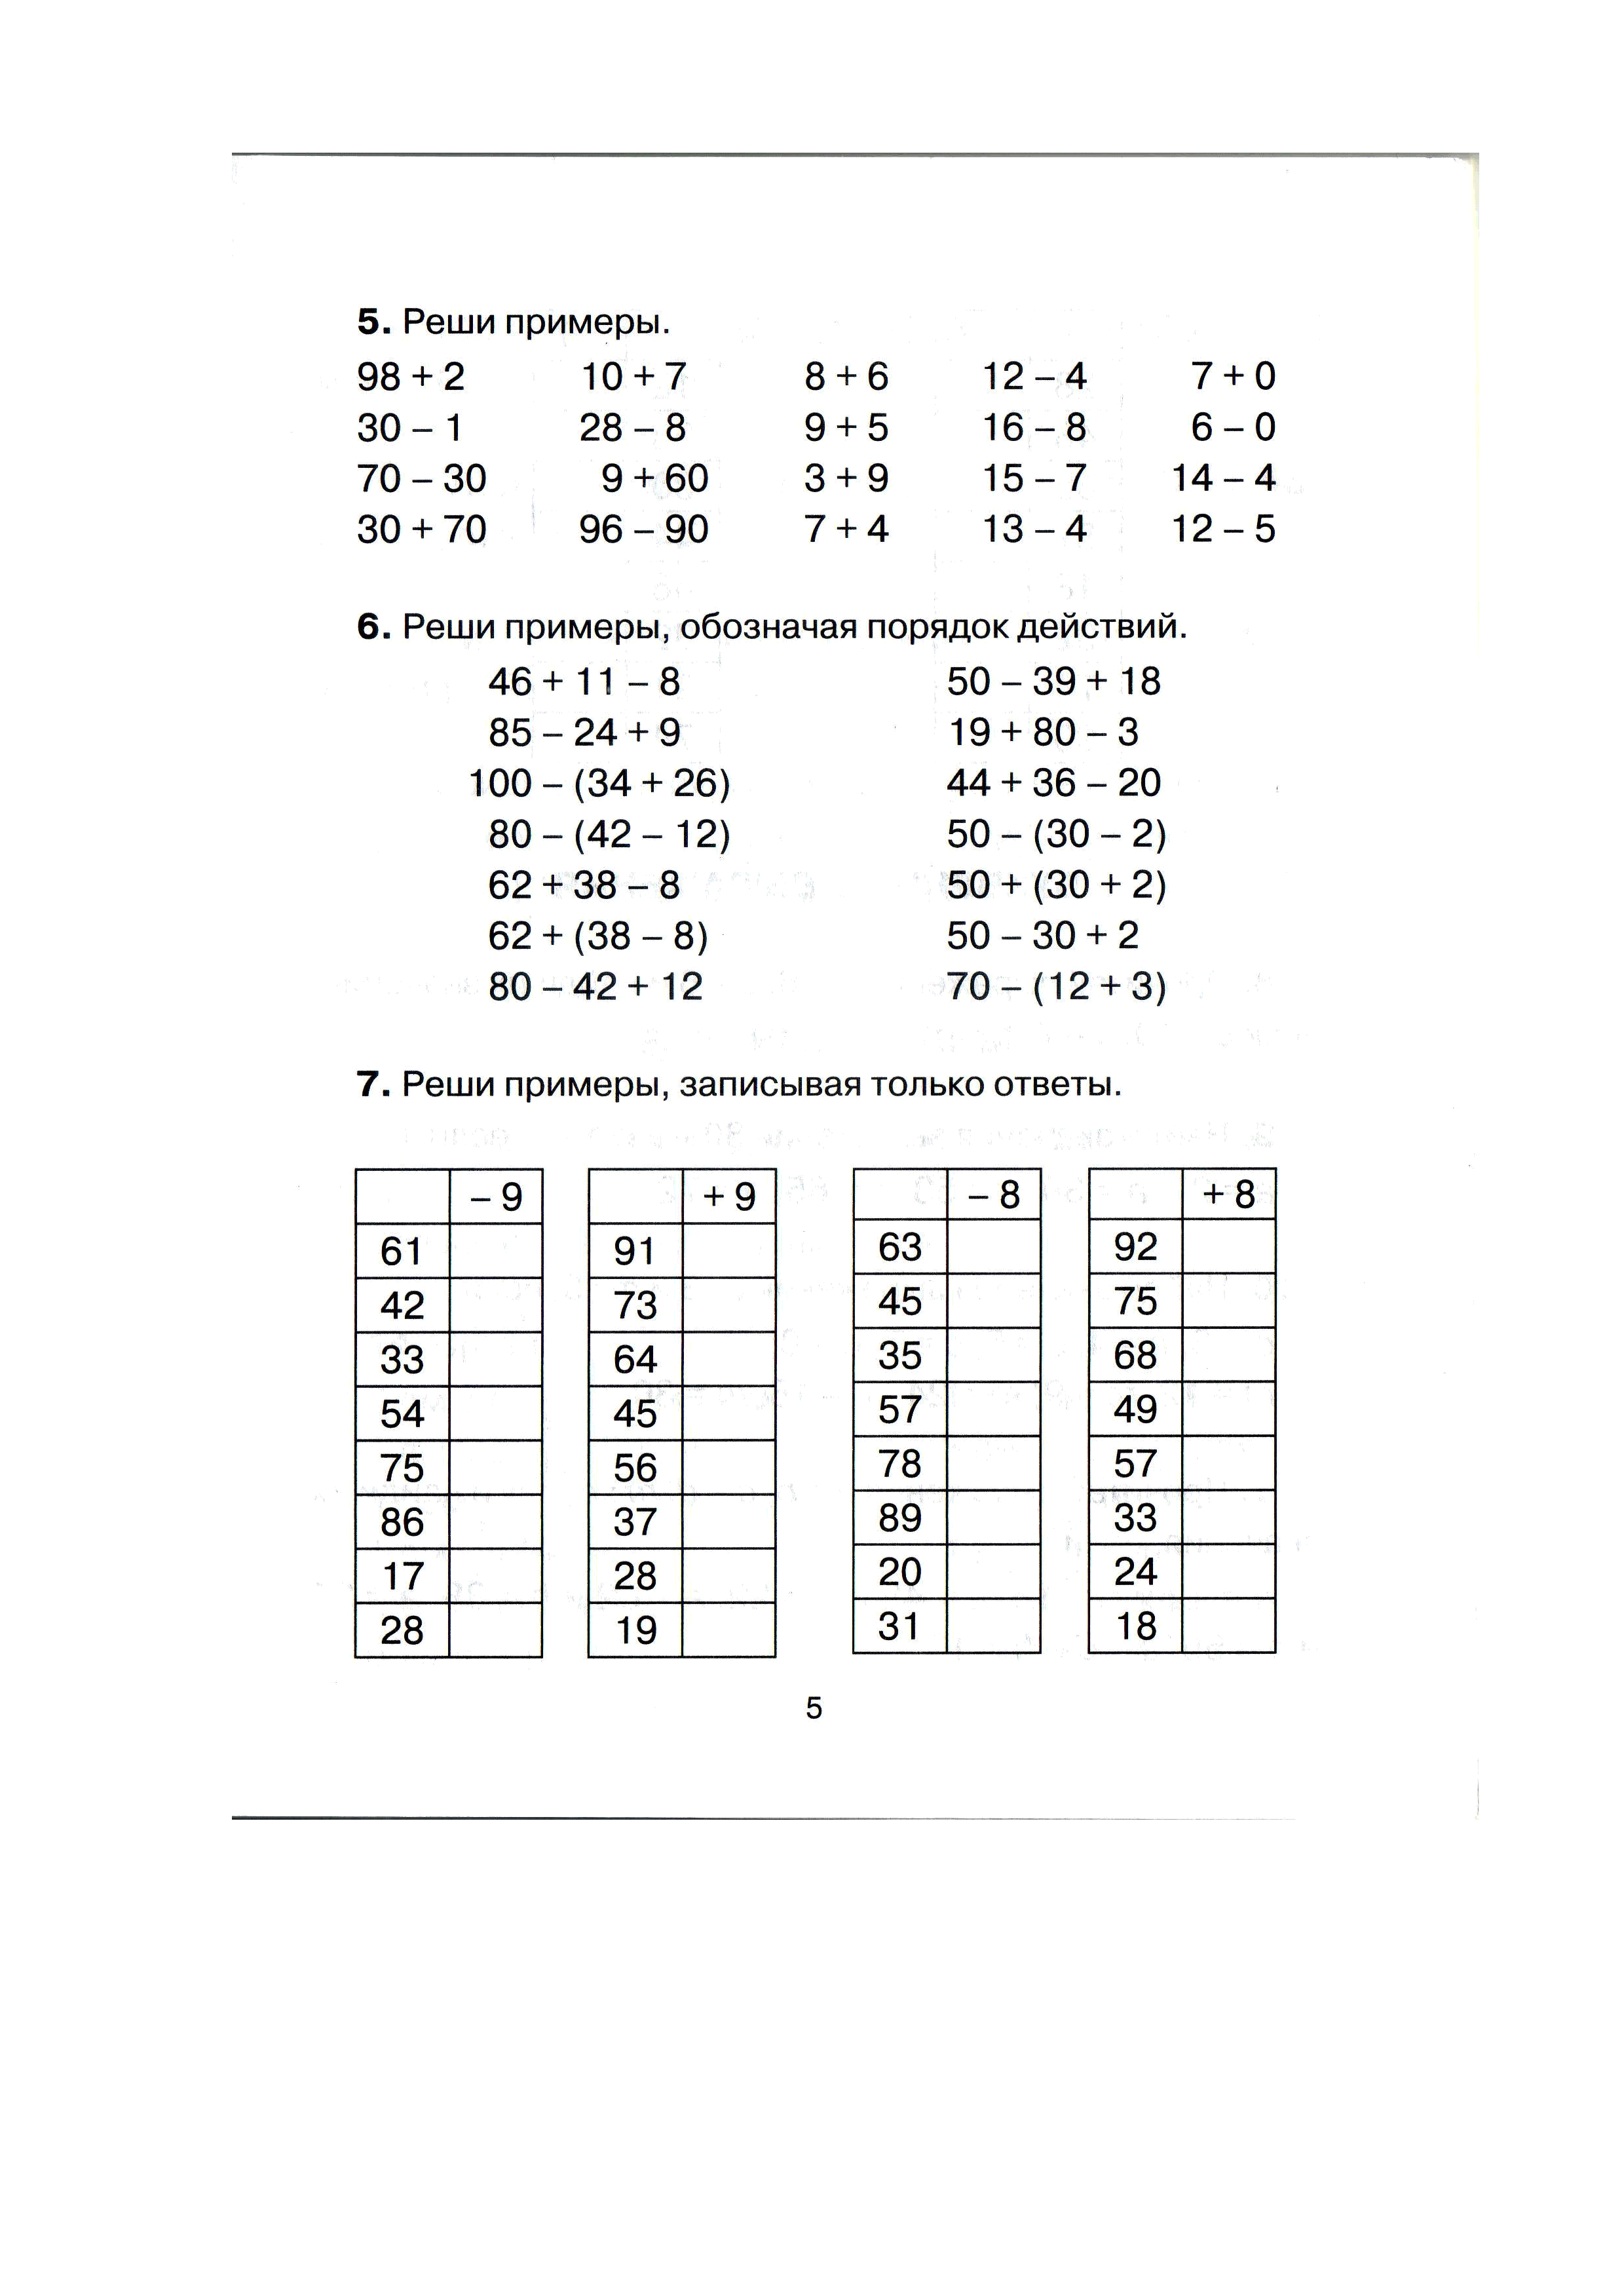 Где примеры по математике. Задания по математике для 3 класса задачи и примеры. Примеры математика математика 3 класс. Задания по математике 3 класс 3 четверть примеры. Задания по математике для 3 класса задачи и примеры с ответами.